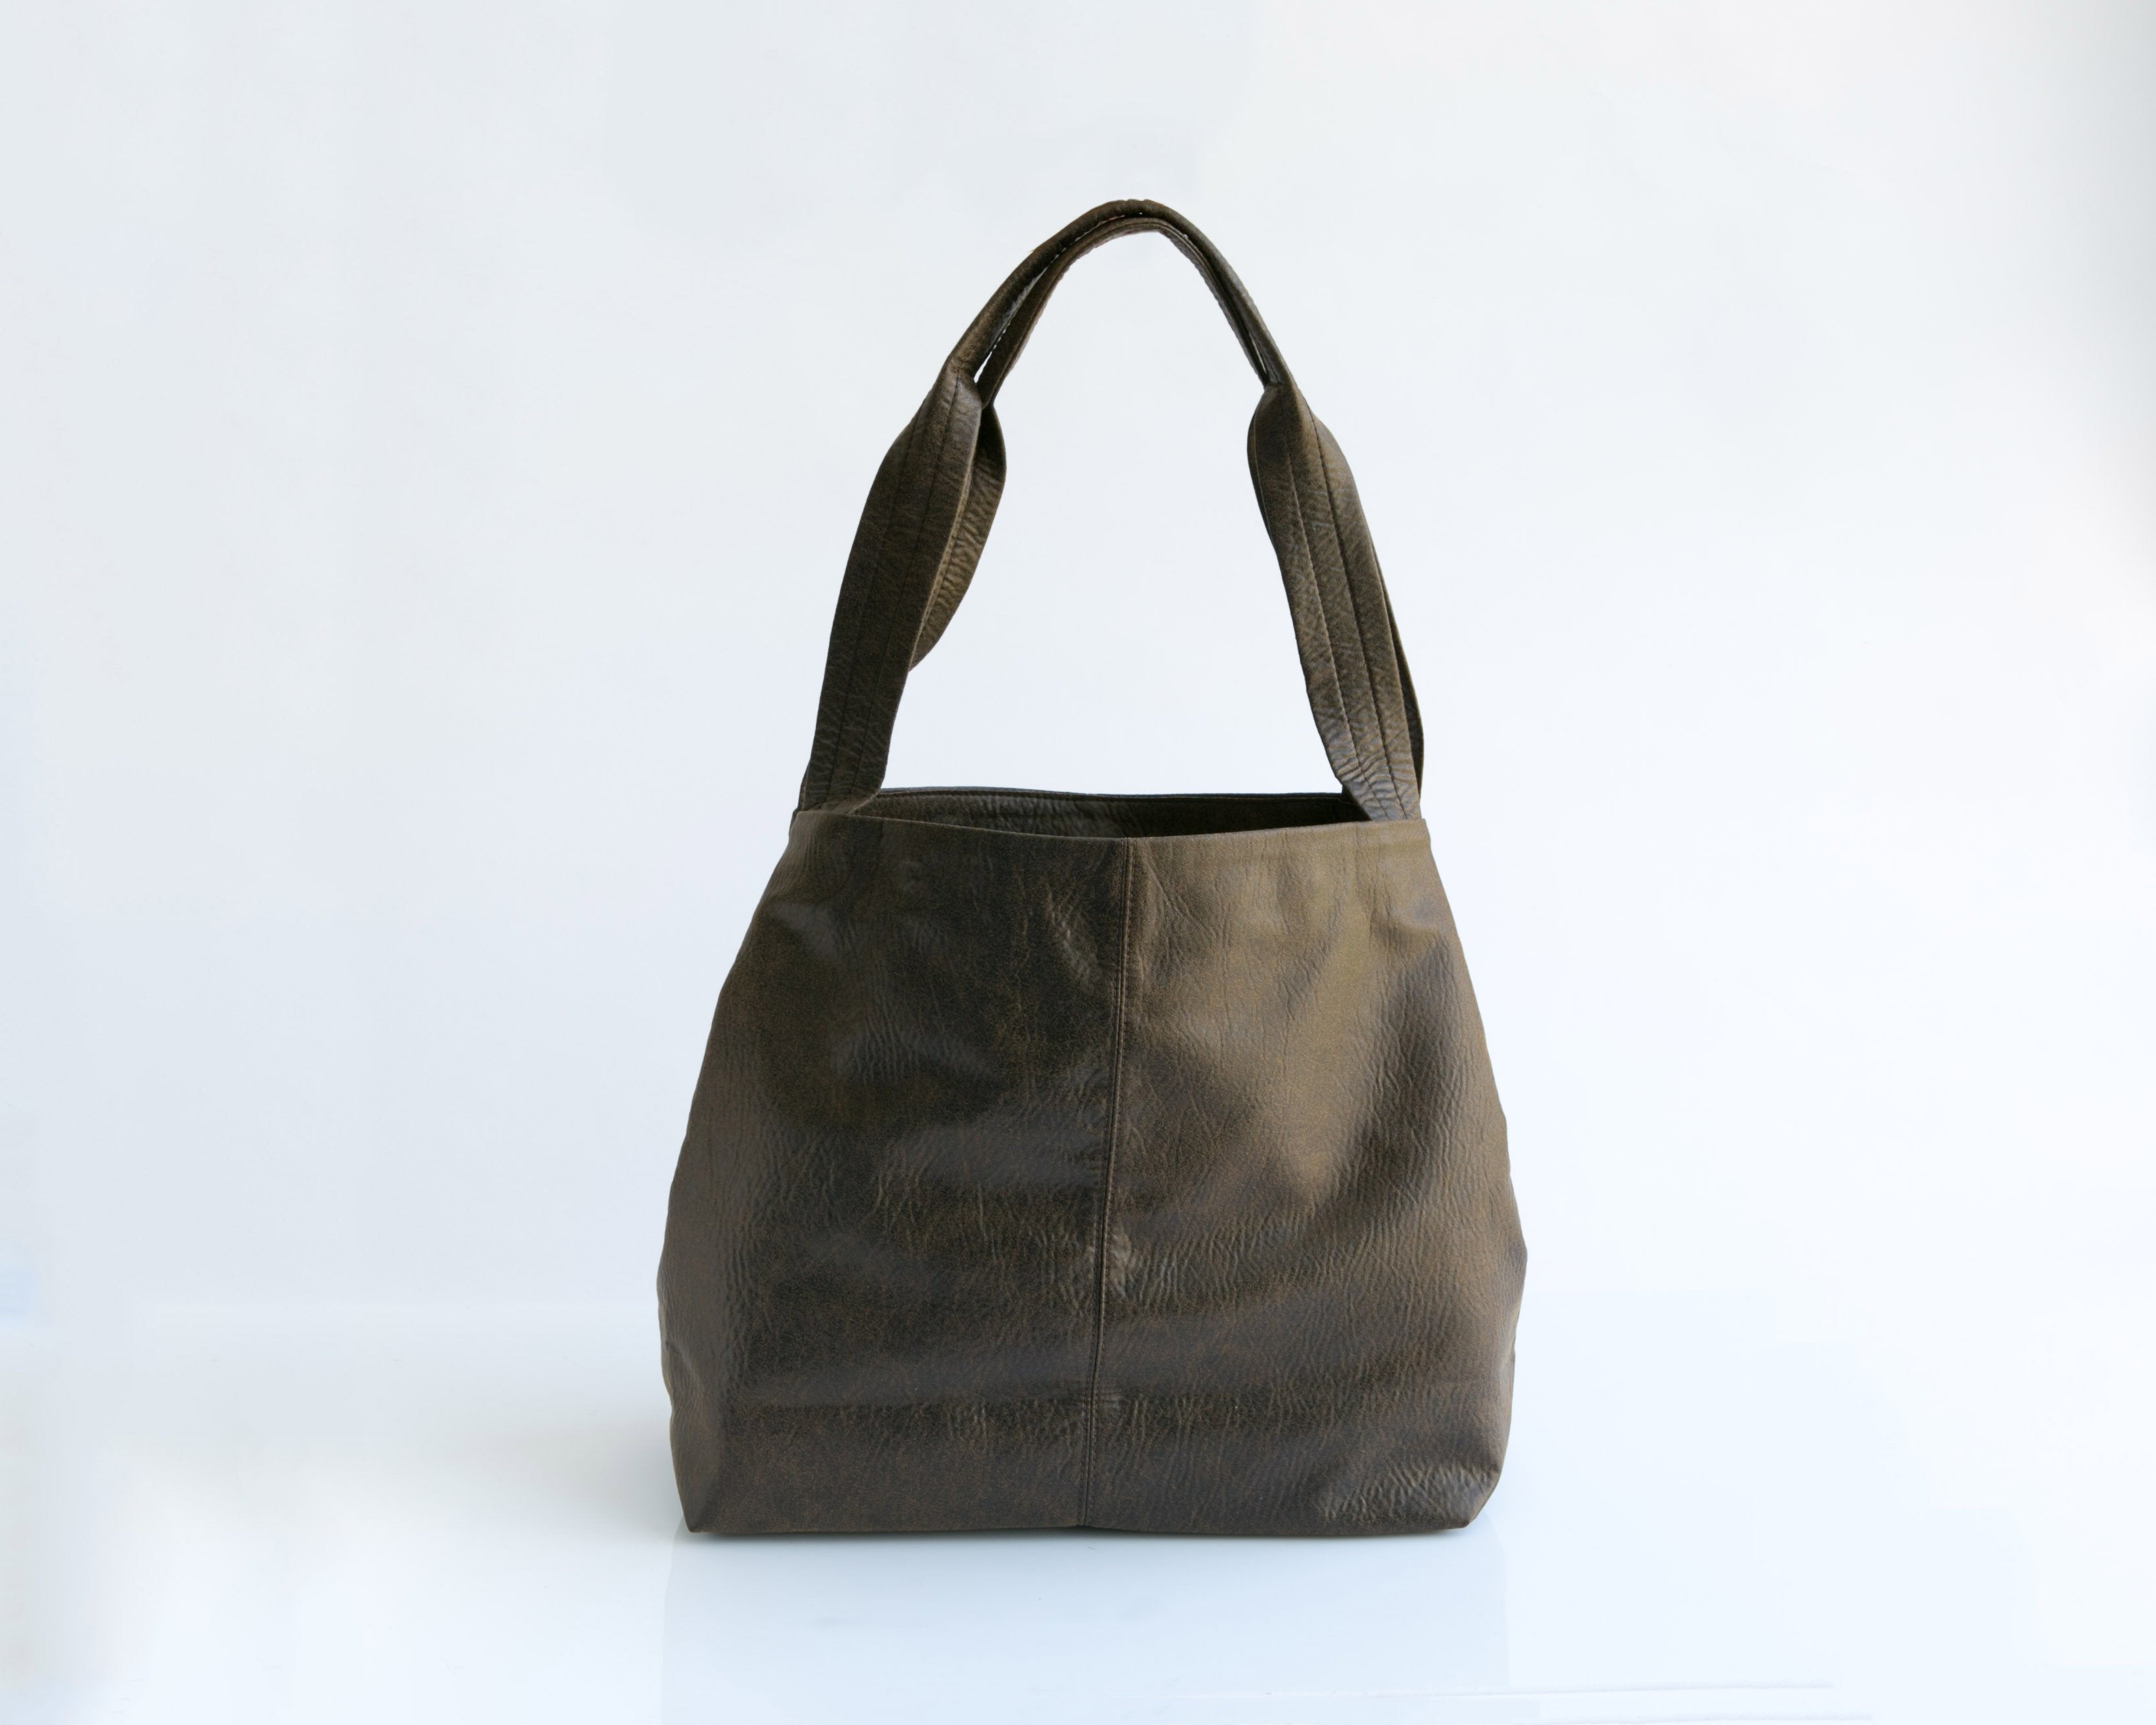 Vegan Faux Leather Tote, Best Vegan Handbag Brand | Mayko Bags DistressedBrown